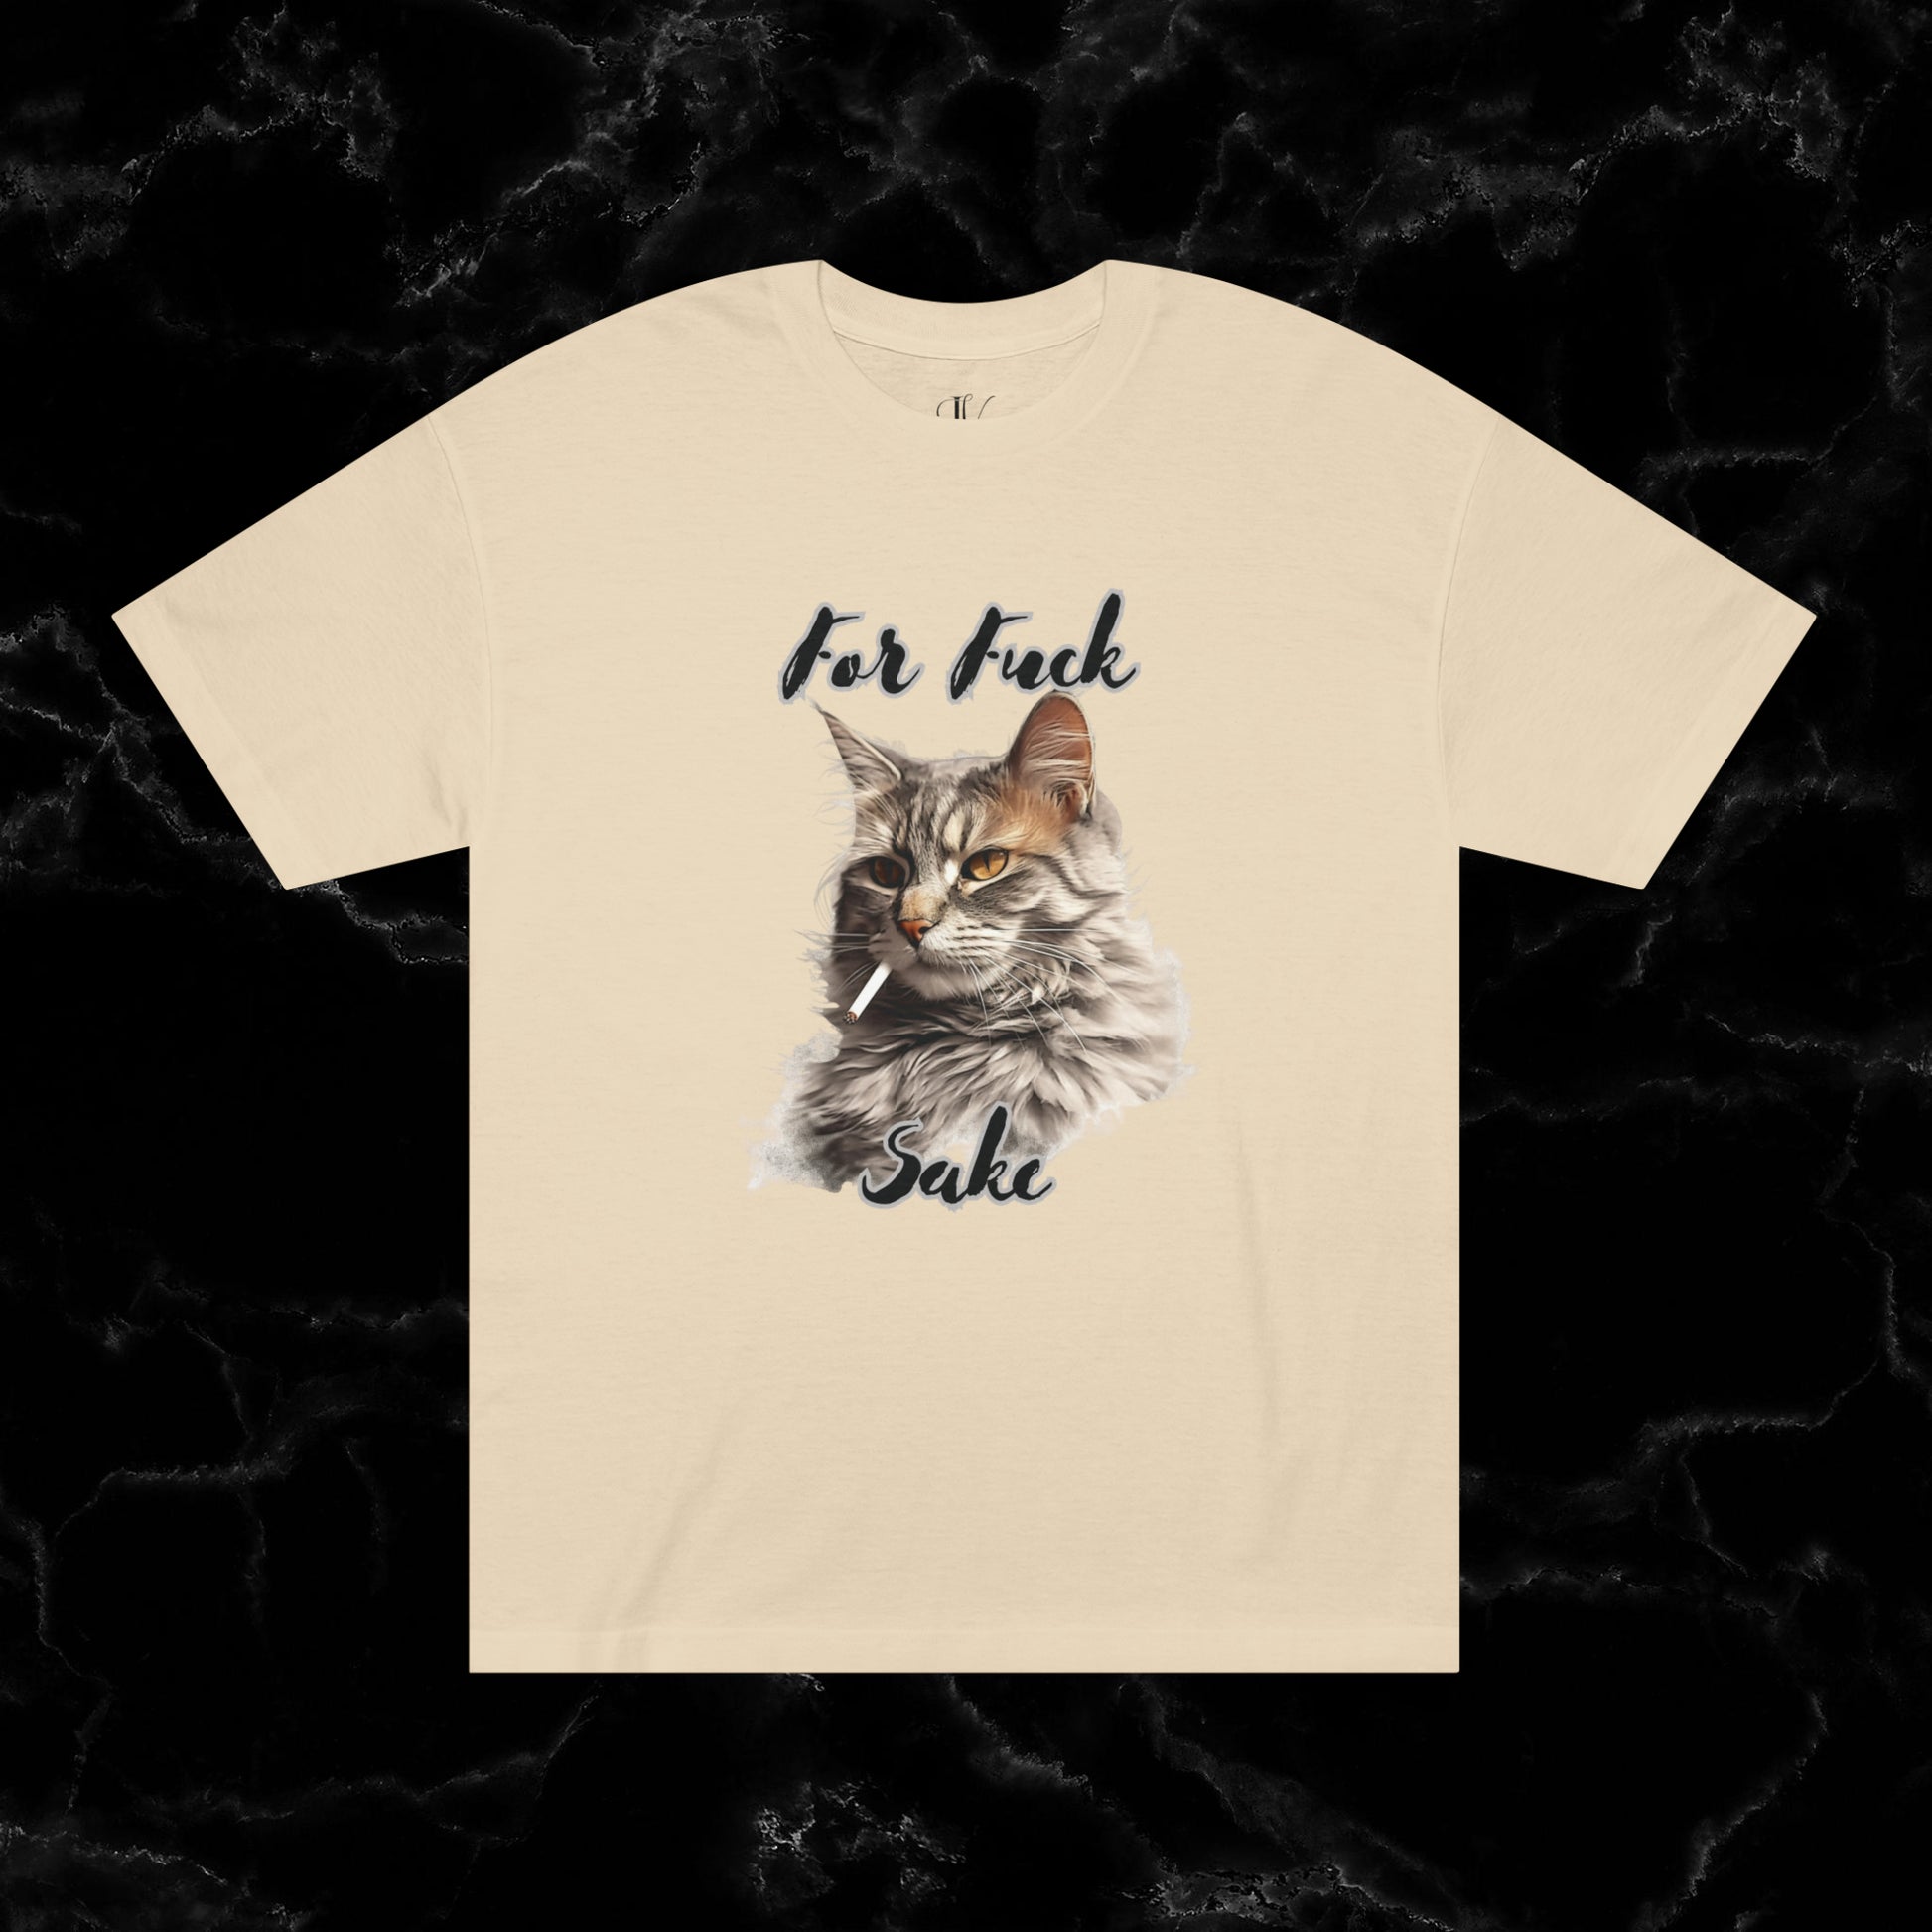 For Feline's Sake: Funny 'For Fuck Sake' Shirt - Perfect Gift for Cat Lovers T-Shirt Sand S 